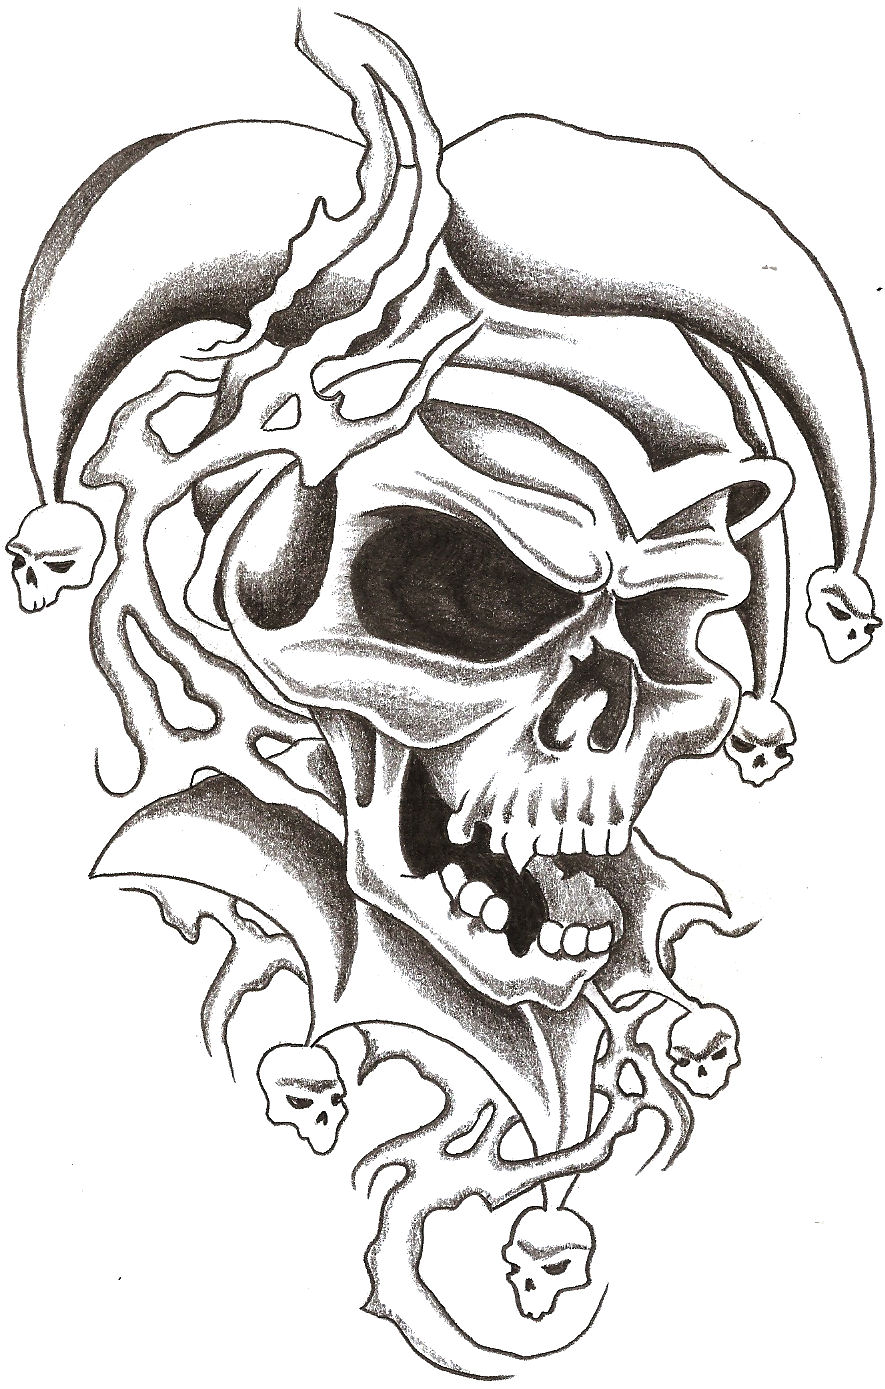 Bad is good     skull  Evil Saints Tattoo  Facebook